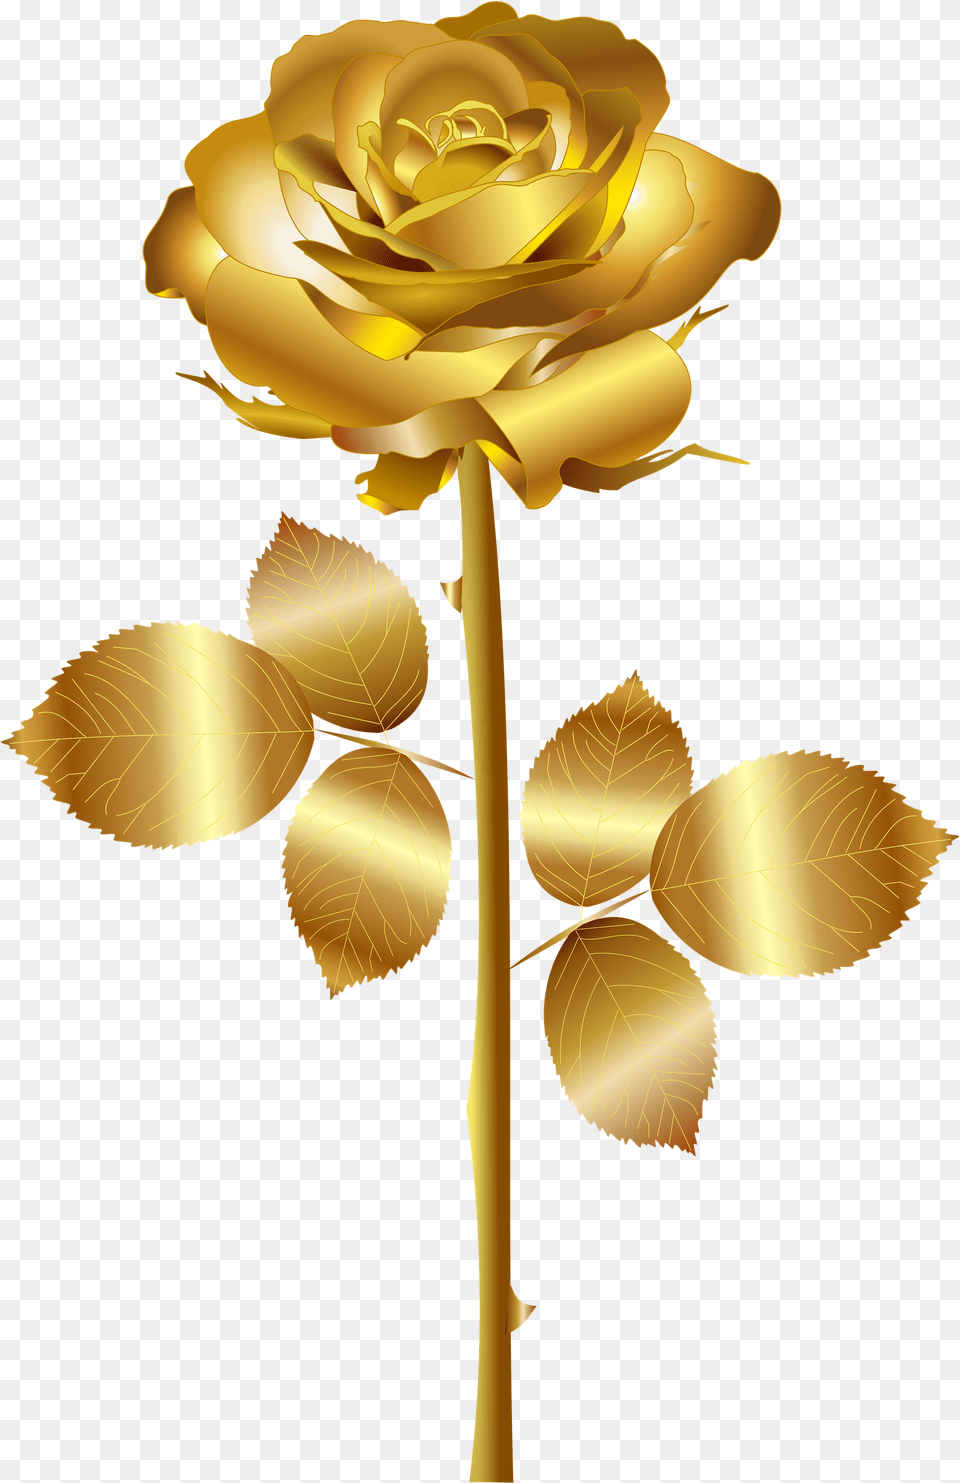 Golden Rose High Quality Image Gold Rose No Background, Flower, Plant, Petal Free Transparent Png